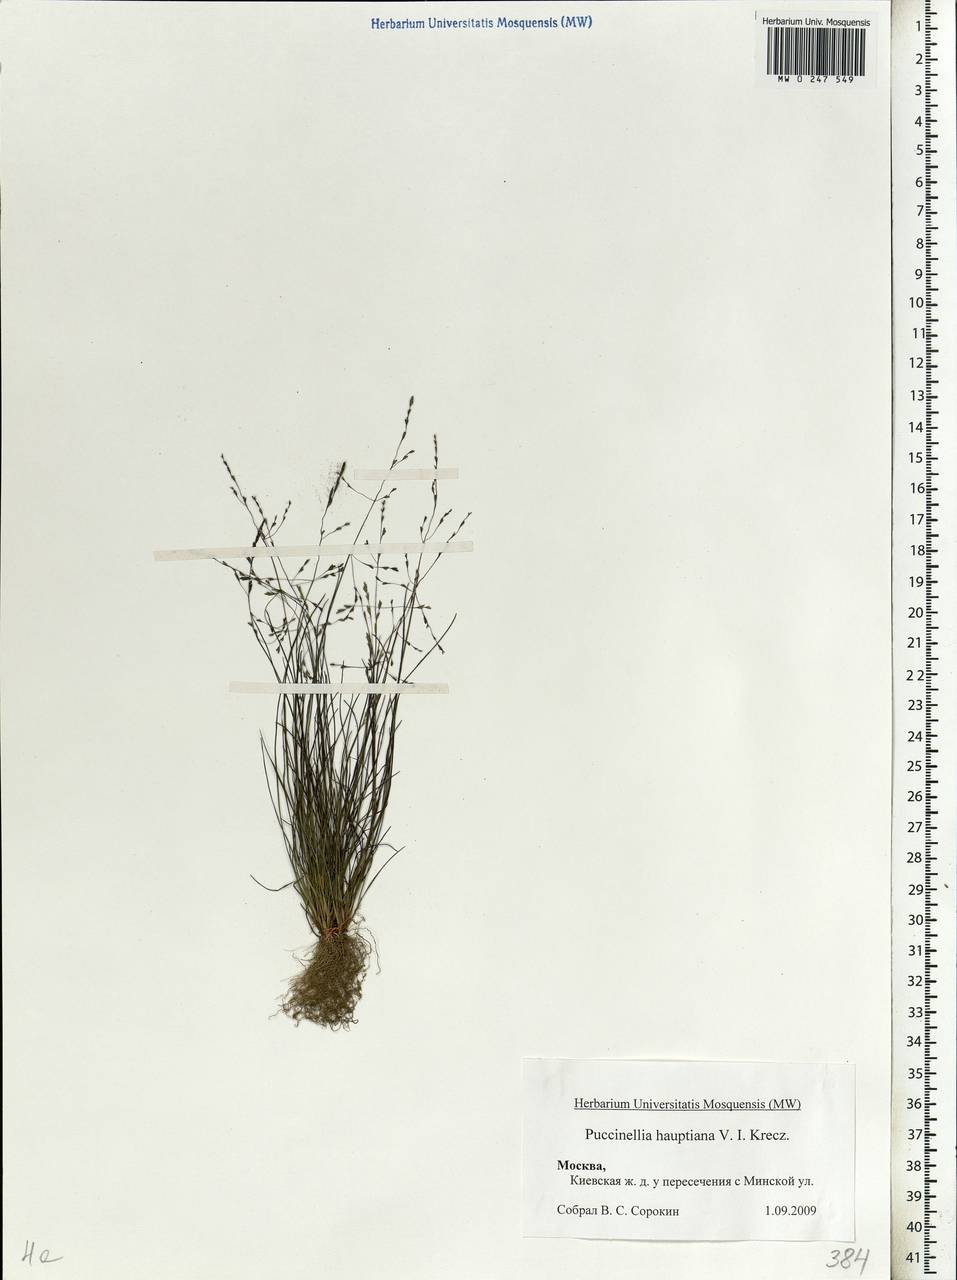 Puccinellia hauptiana (V.I.Krecz.) Kitag., Eastern Europe, Moscow region (E4a) (Russia)